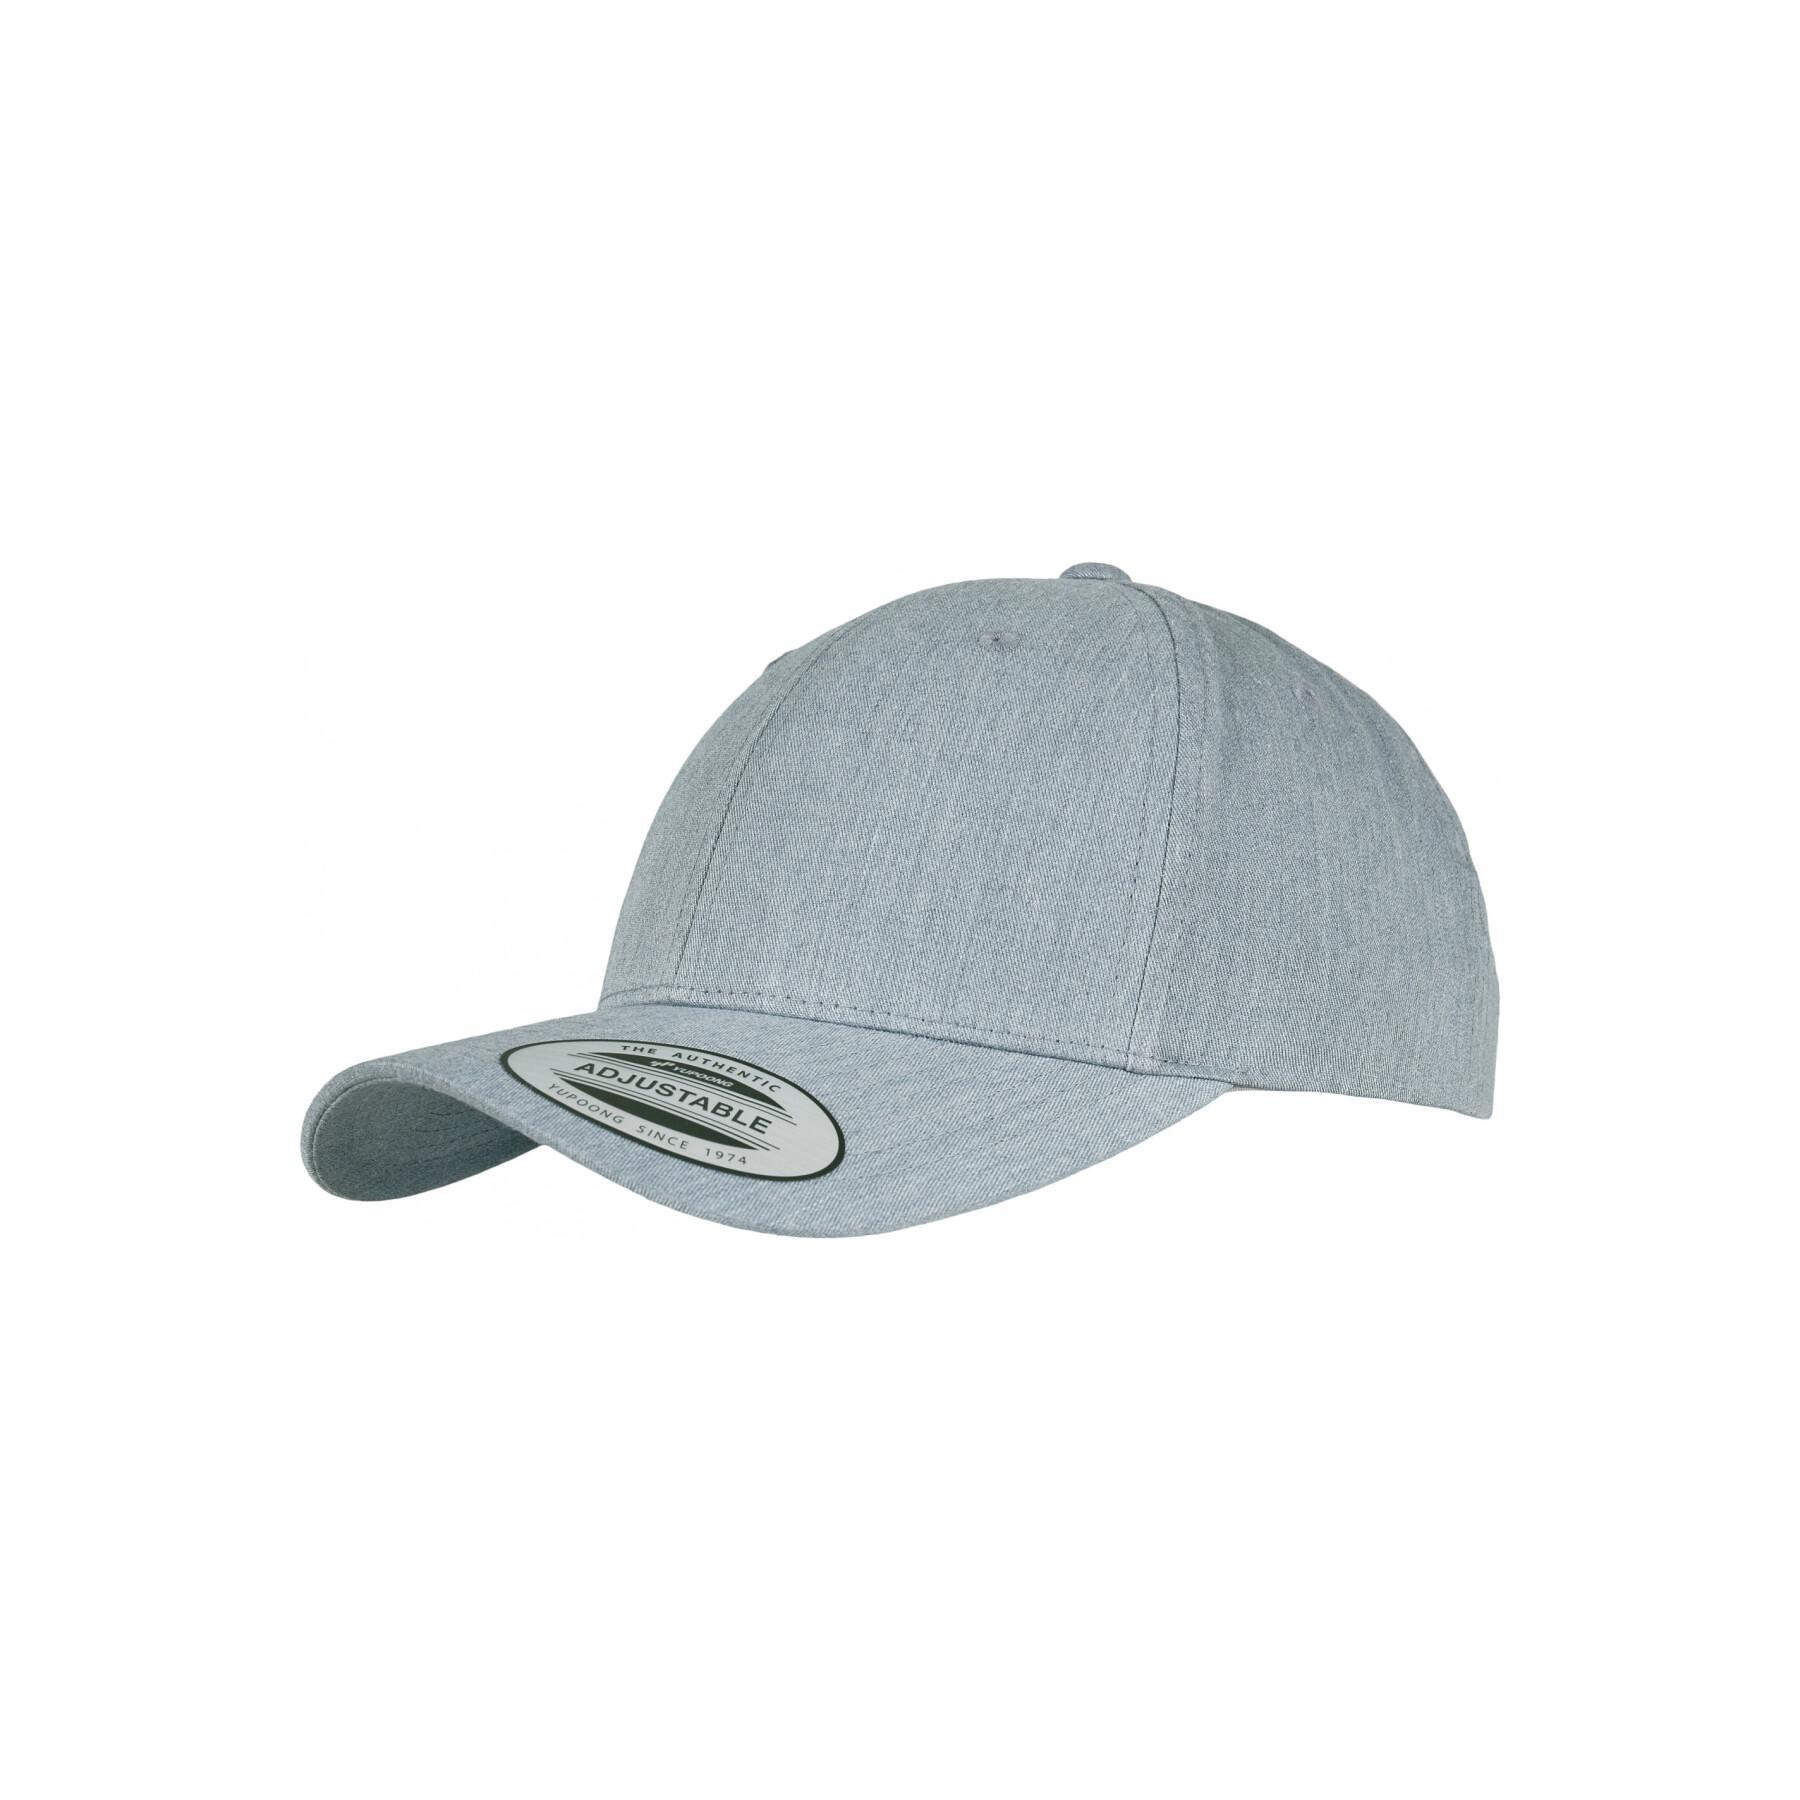 curved Headwear caps - - cap Flexfit Classic - Accessories Baseball